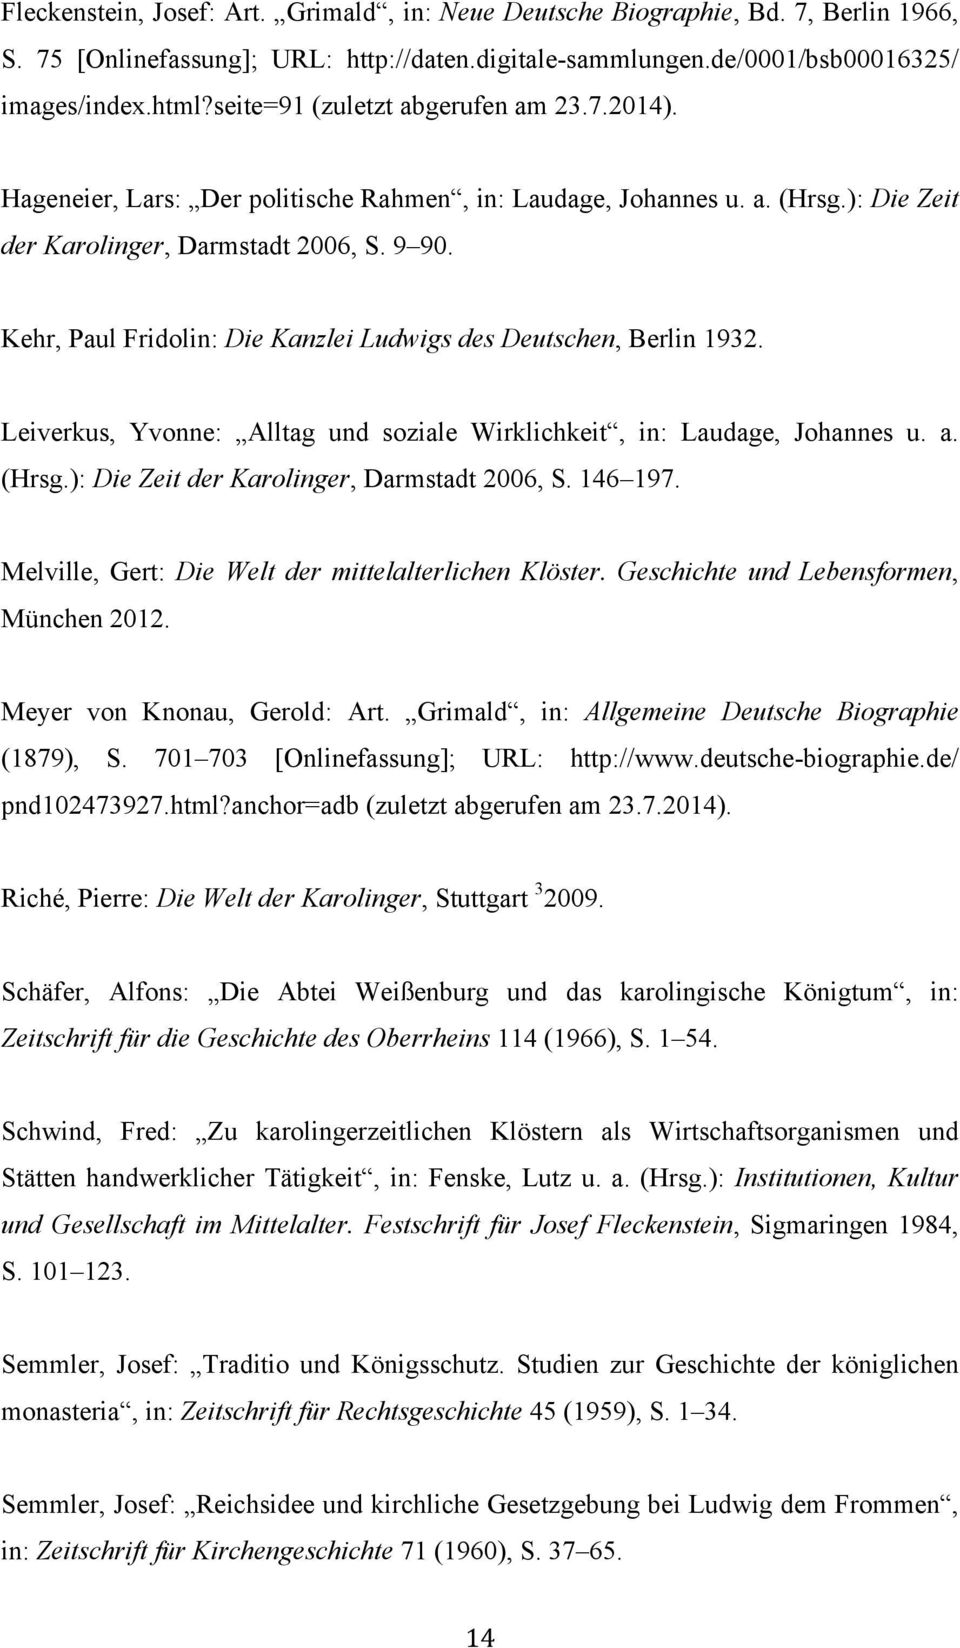 Kehr, Paul Fridolin: Die Kanzlei Ludwigs des Deutschen, Berlin 1932. Leiverkus, Yvonne: Alltag und soziale Wirklichkeit, in: Laudage, Johannes u. a. (Hrsg.